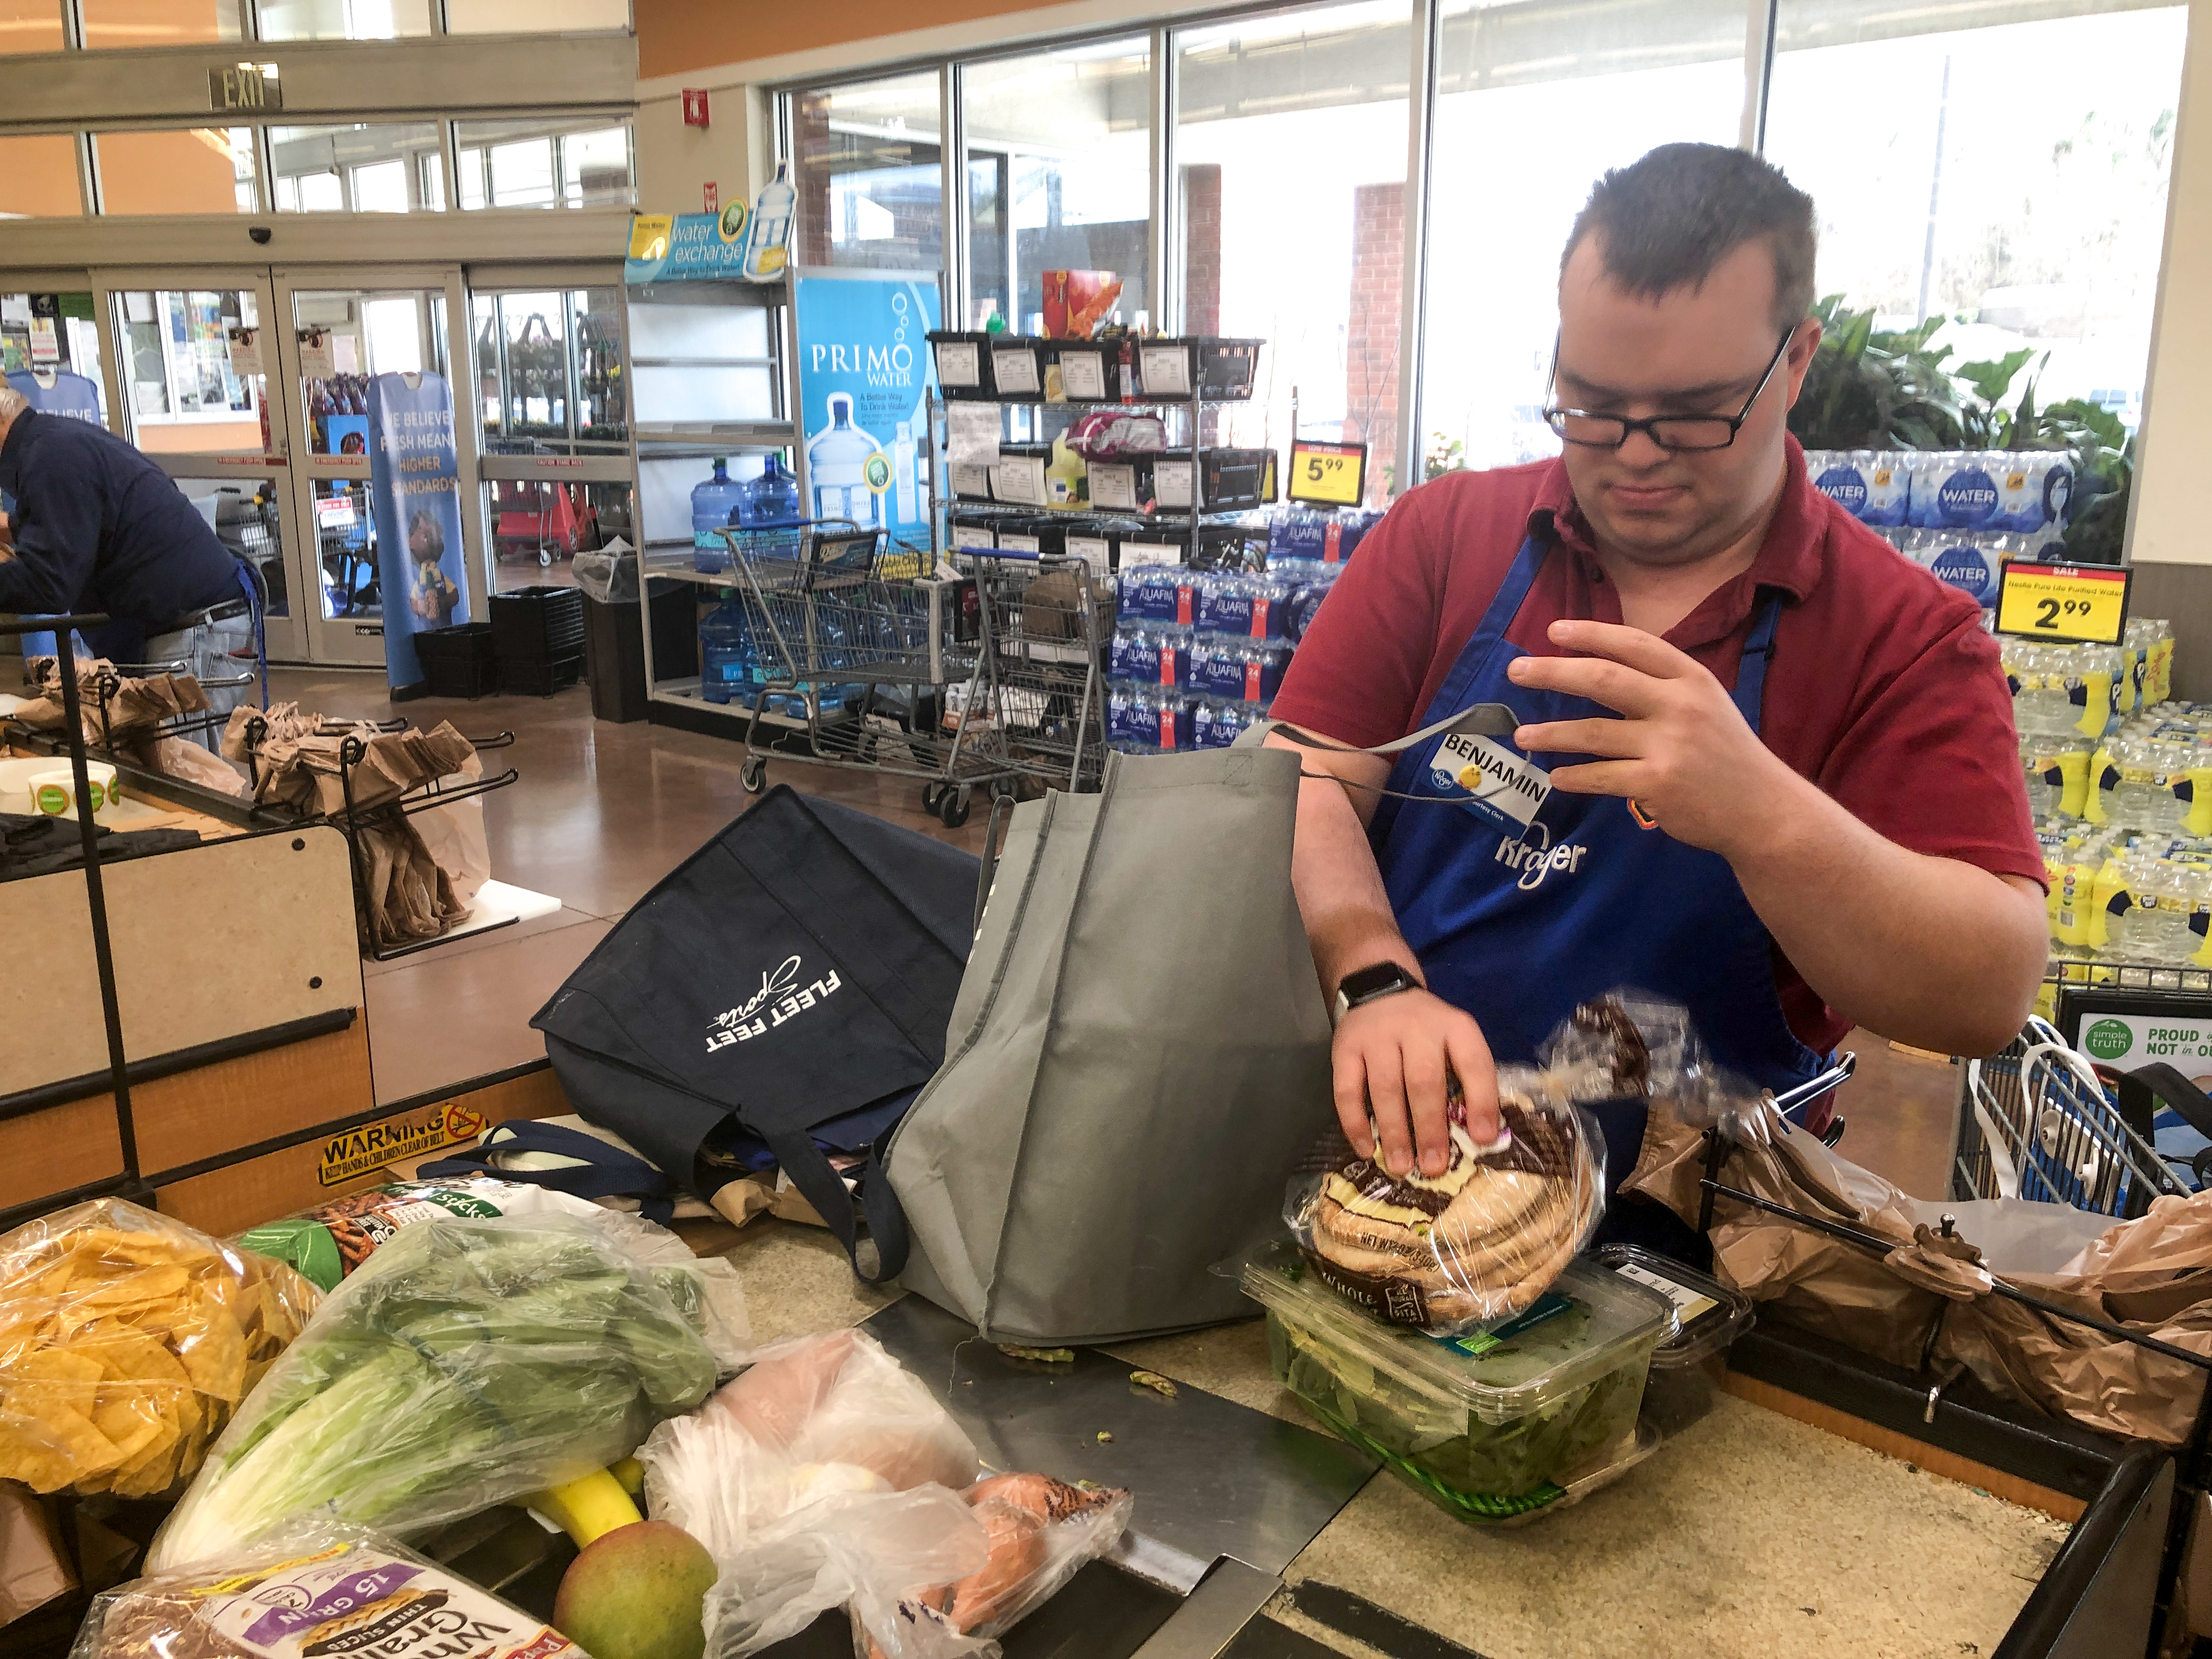 Ben bagging groceries